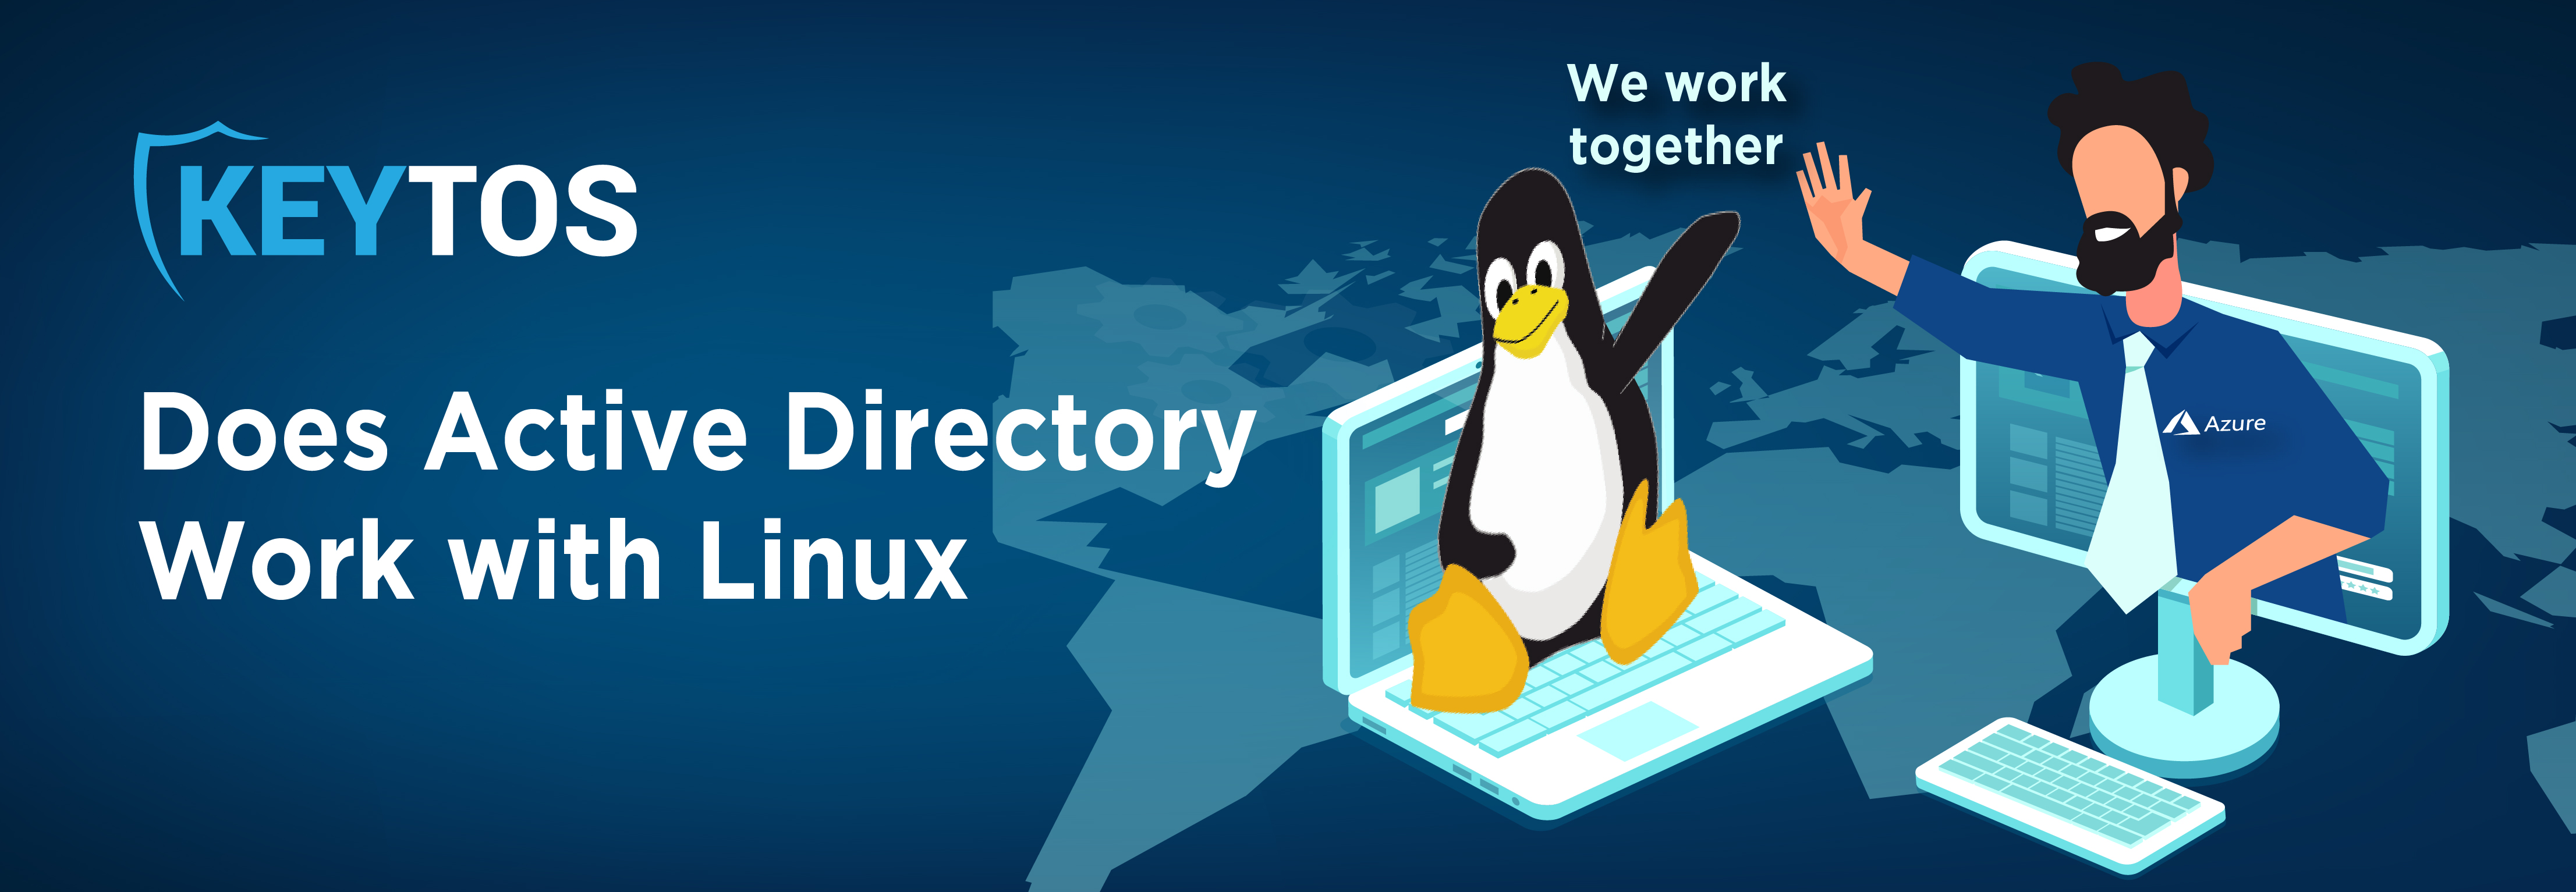 ¿Microsoft Active Directory funciona con Linux?